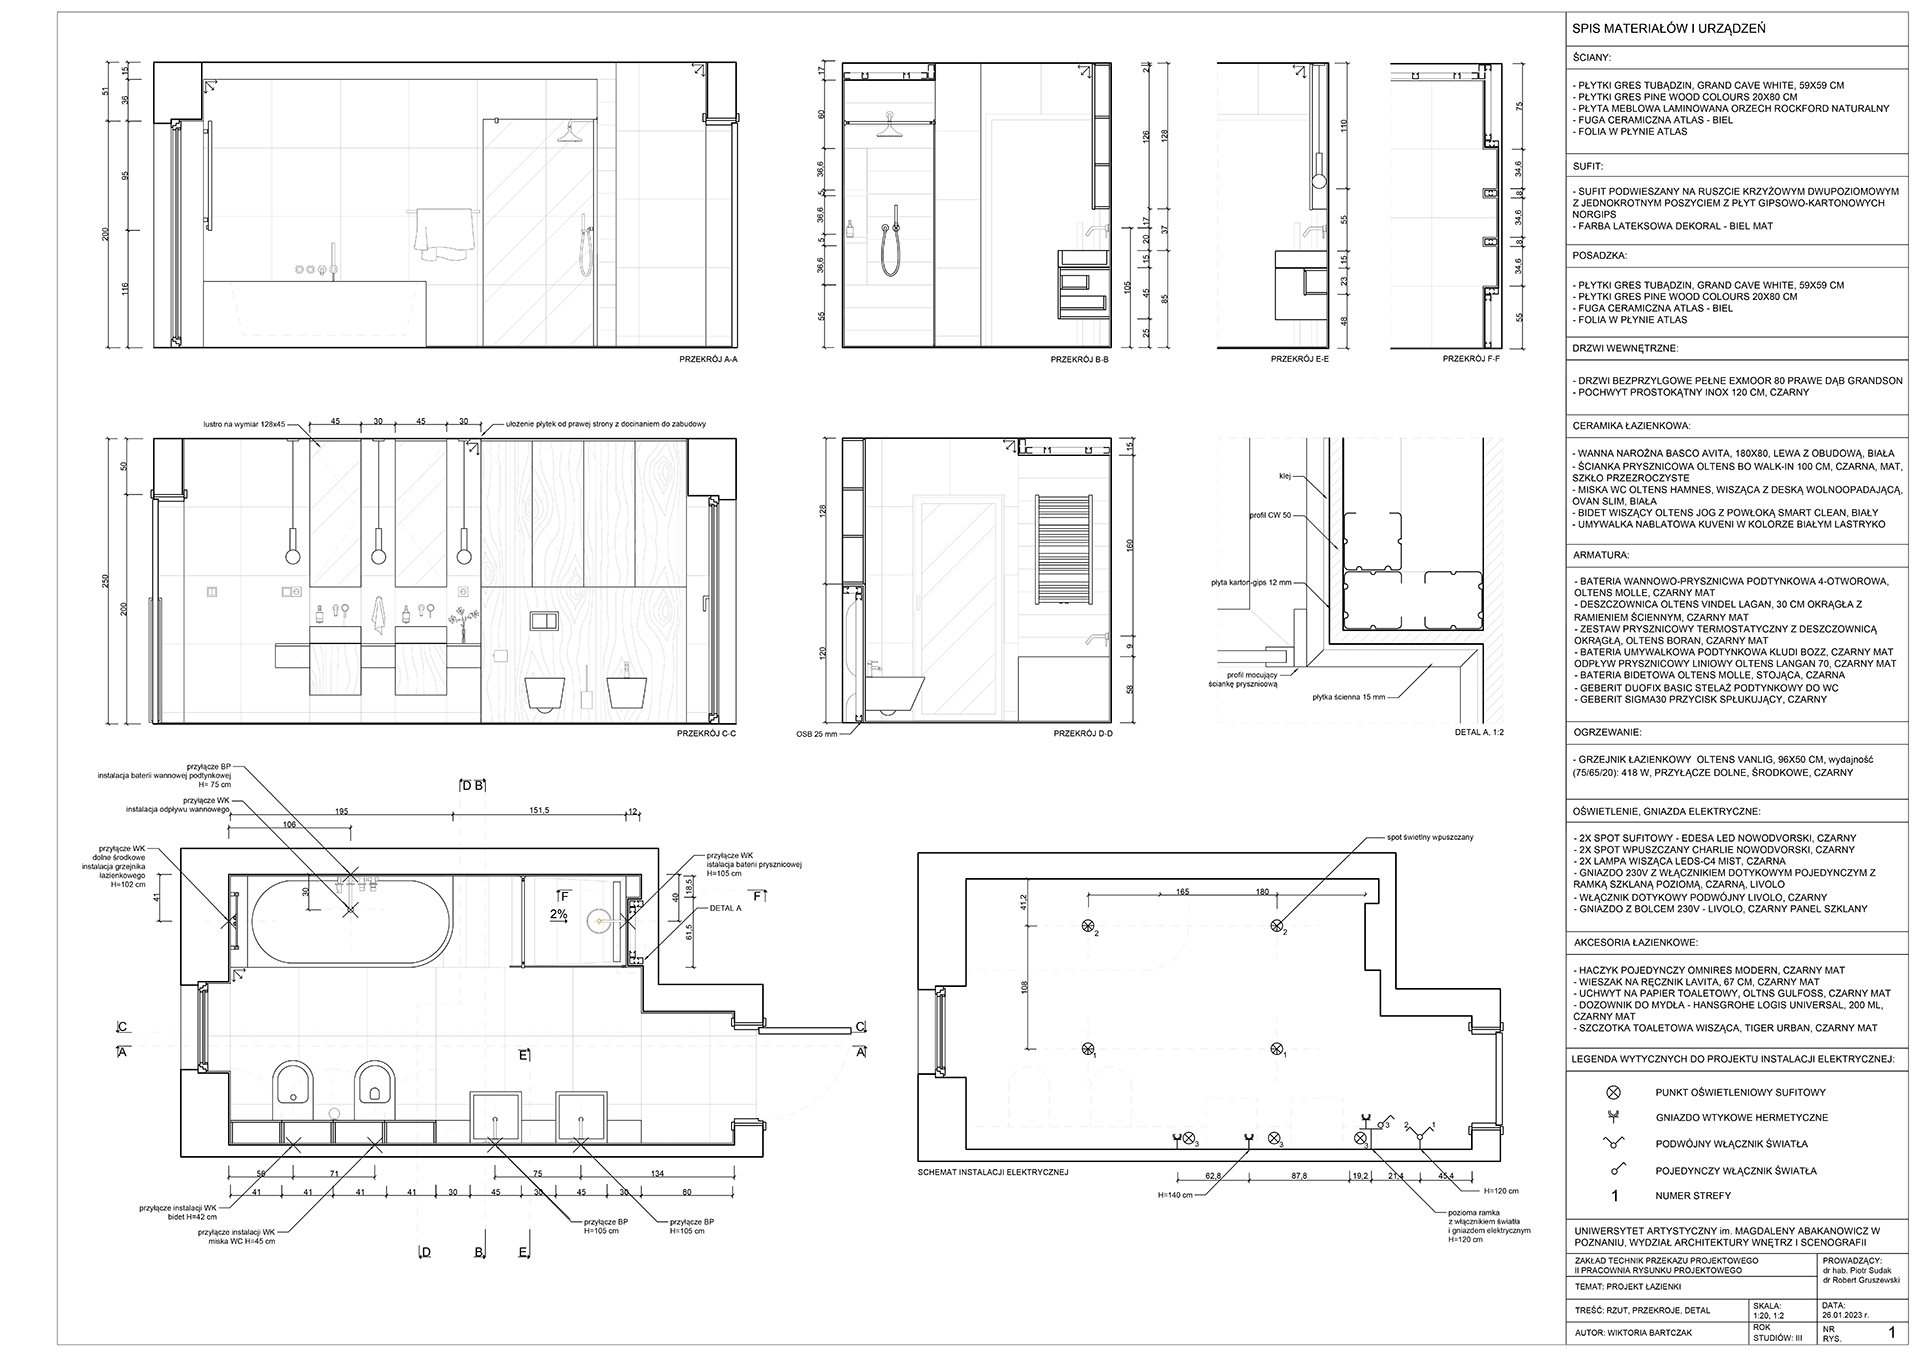 Projekt techniczny łazienki opracowany zgodnie z zasadami rysunku projektowego zawierający informacje niezbędne do jego wykonania.